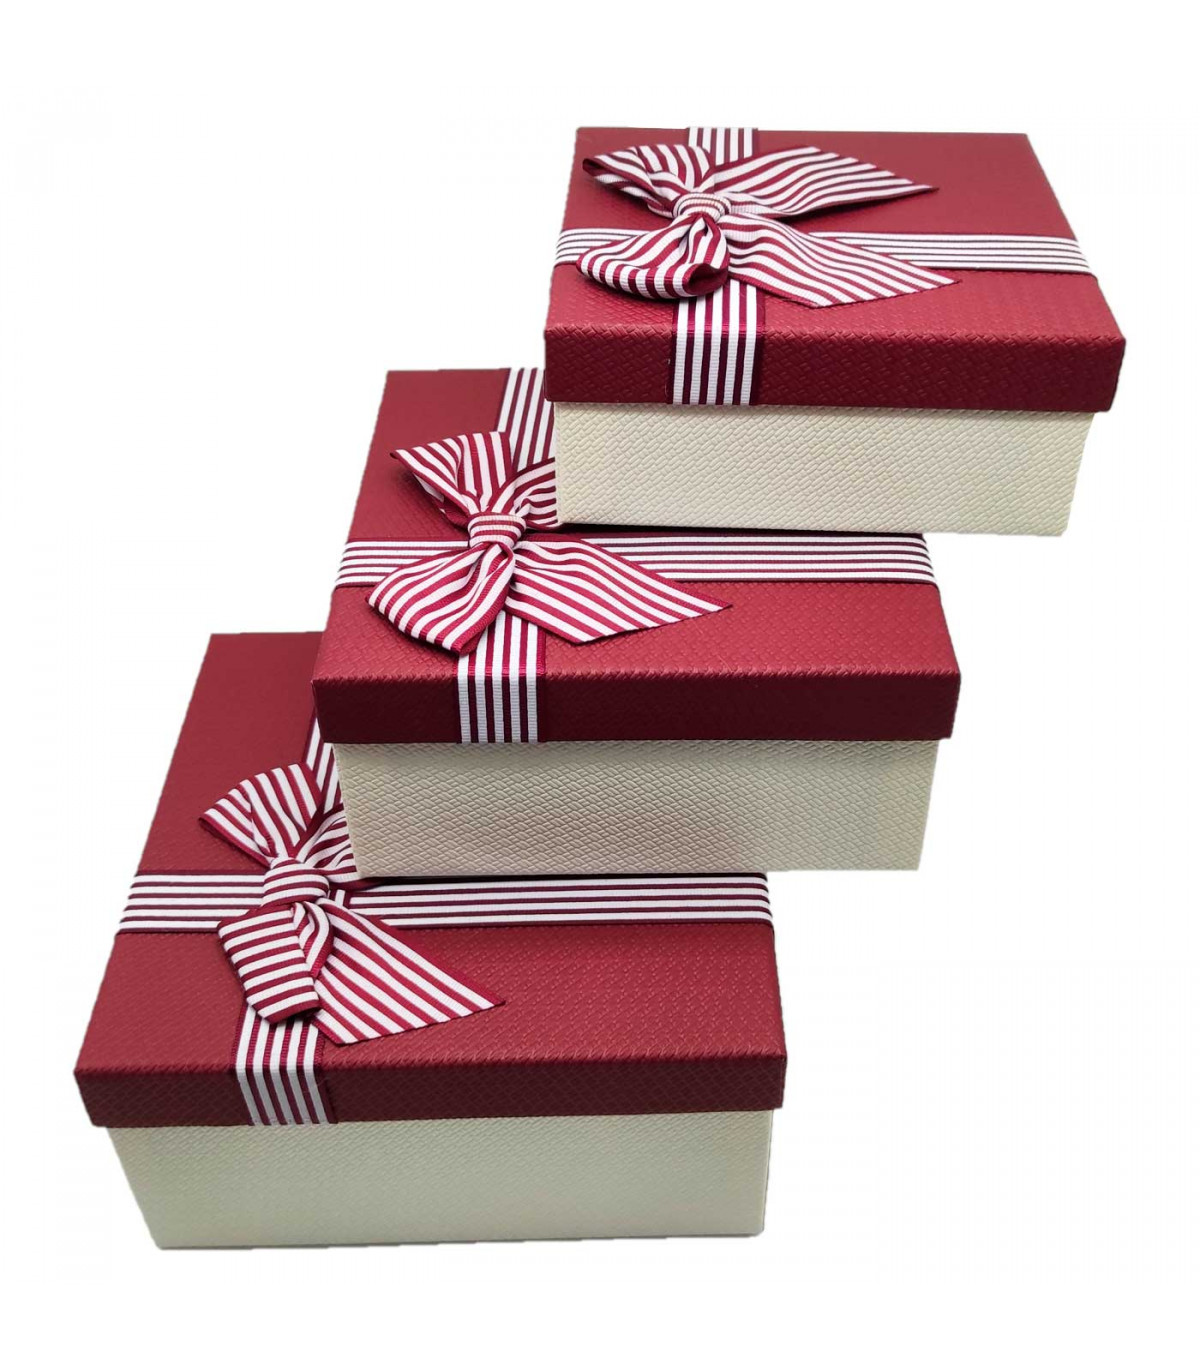 Set 3 cajas de regalo cuadradas con lazo, 3 tamaños distintos